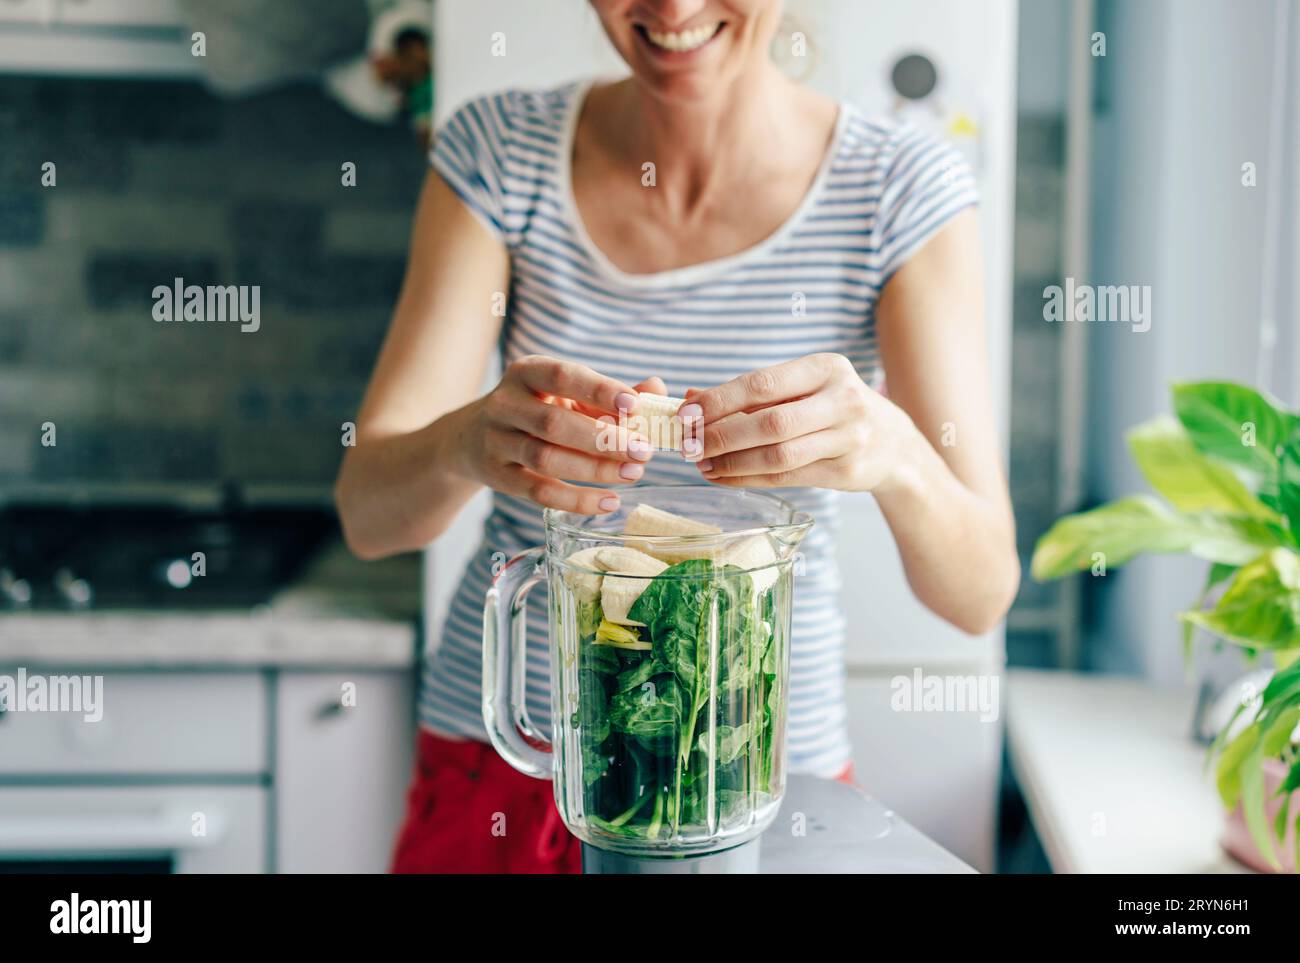 Eine junge Frau gibt die Zutaten für einen Smoothie in eine Mixschüssel. Gesunde Ernährung Konzept. Stockfoto